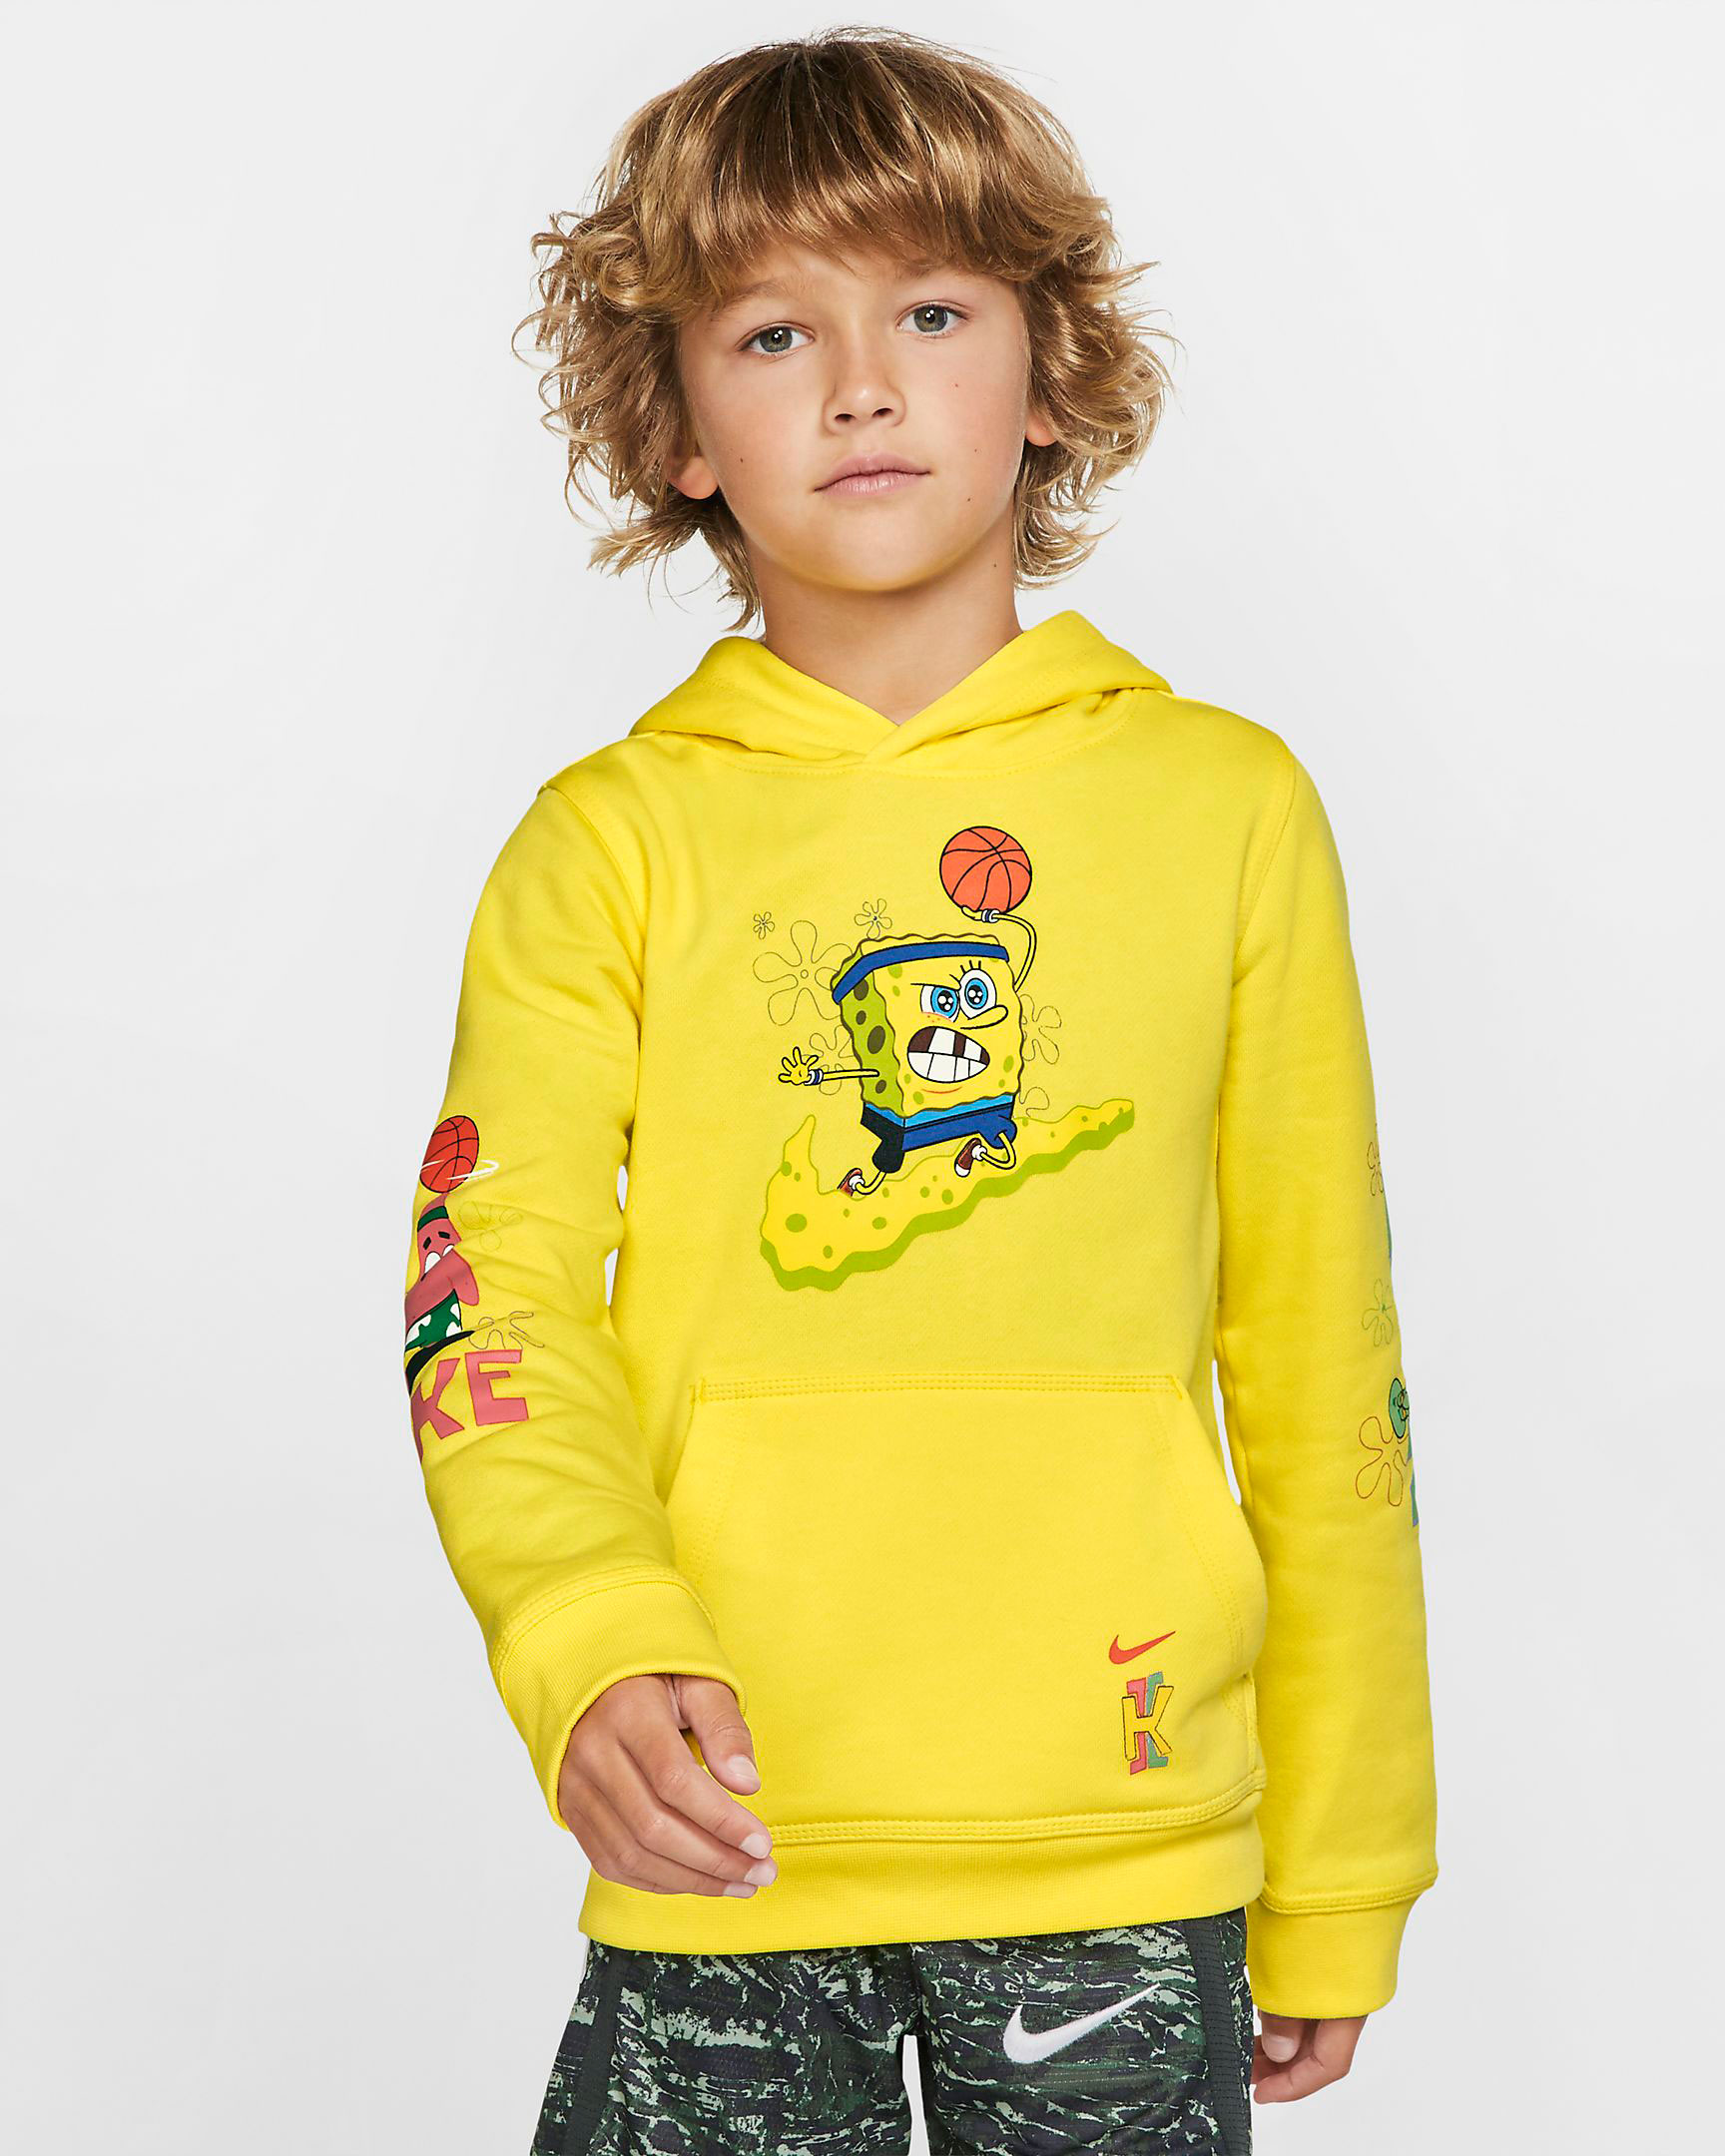 nike-kyrie-spongebob-kids-hoodie-yellow-2